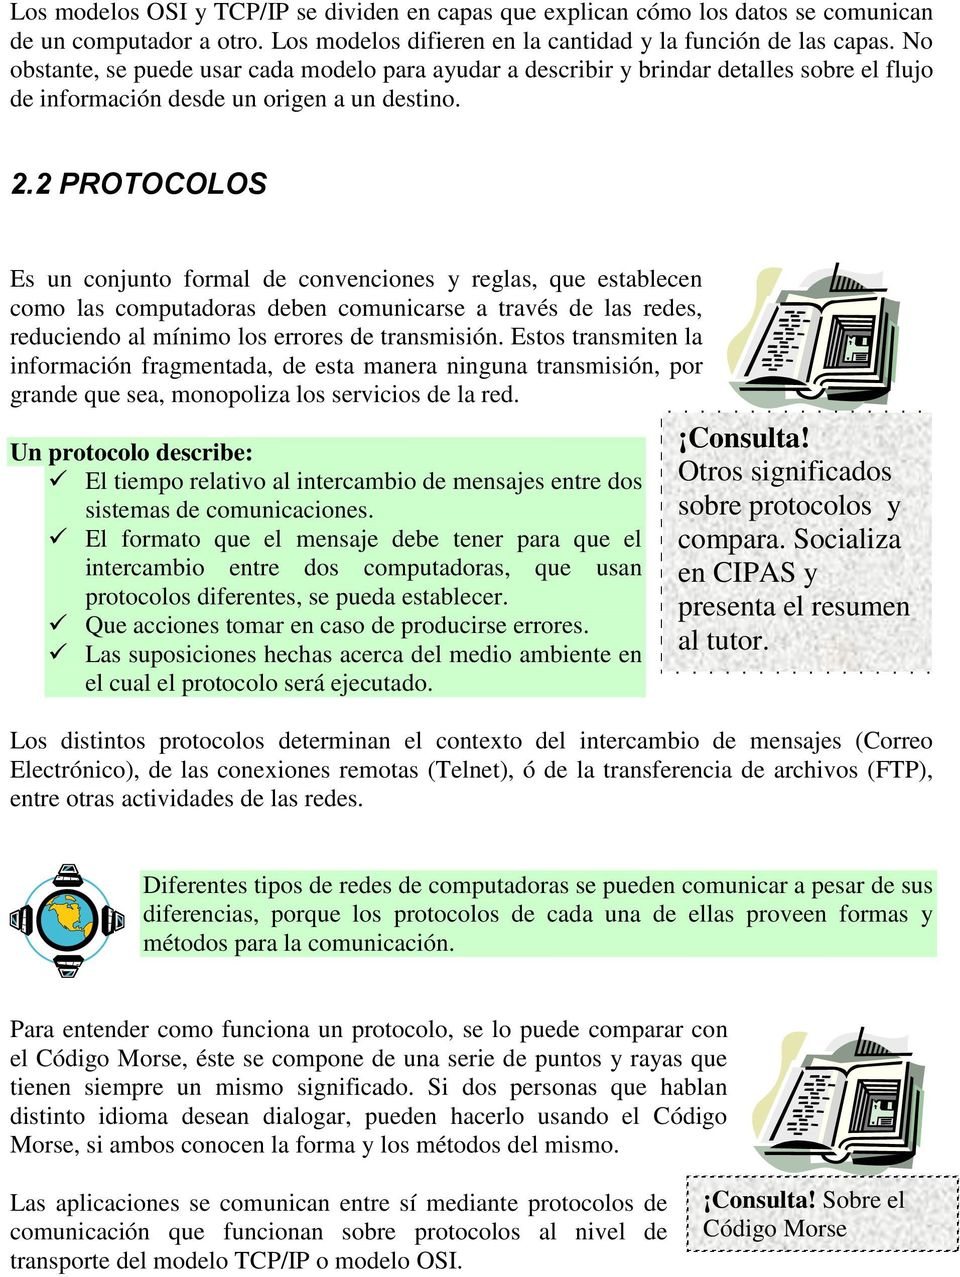 UNIDAD 2. QUE SON LOS MODELOS OSI Y TCP/IP. - PDF Free Download